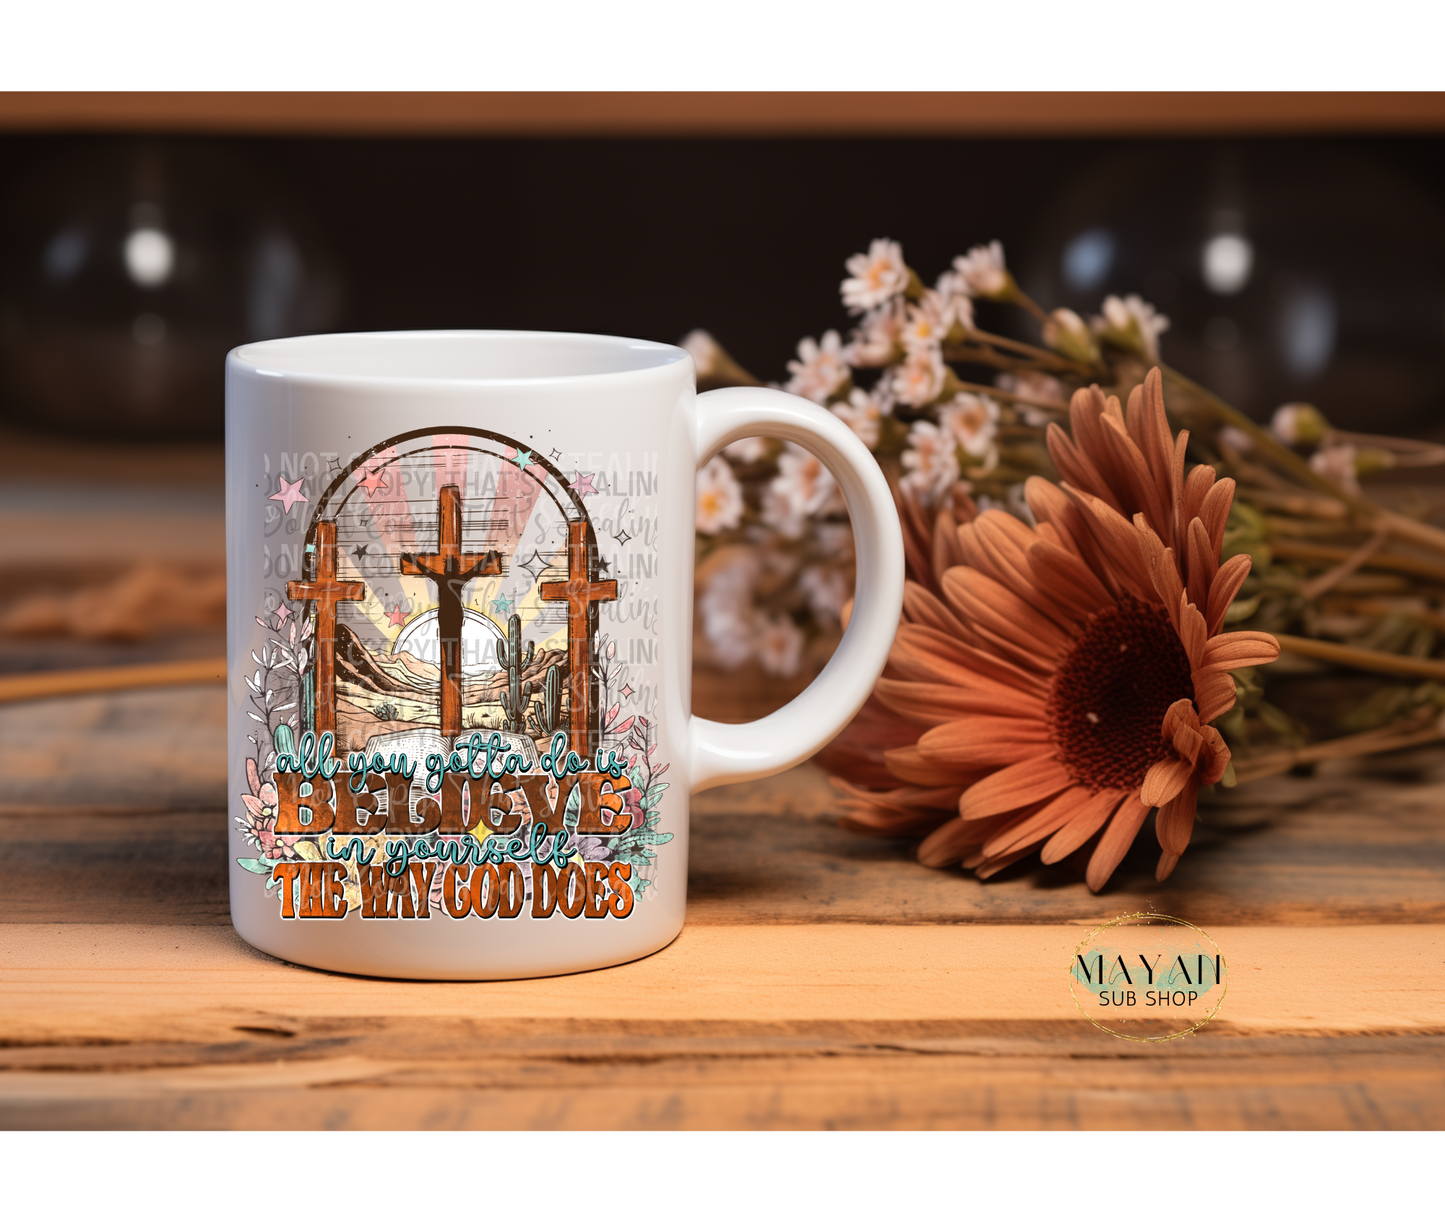 Believe in yourself 15 oz. coffee mug. -Mayan Sub Shop